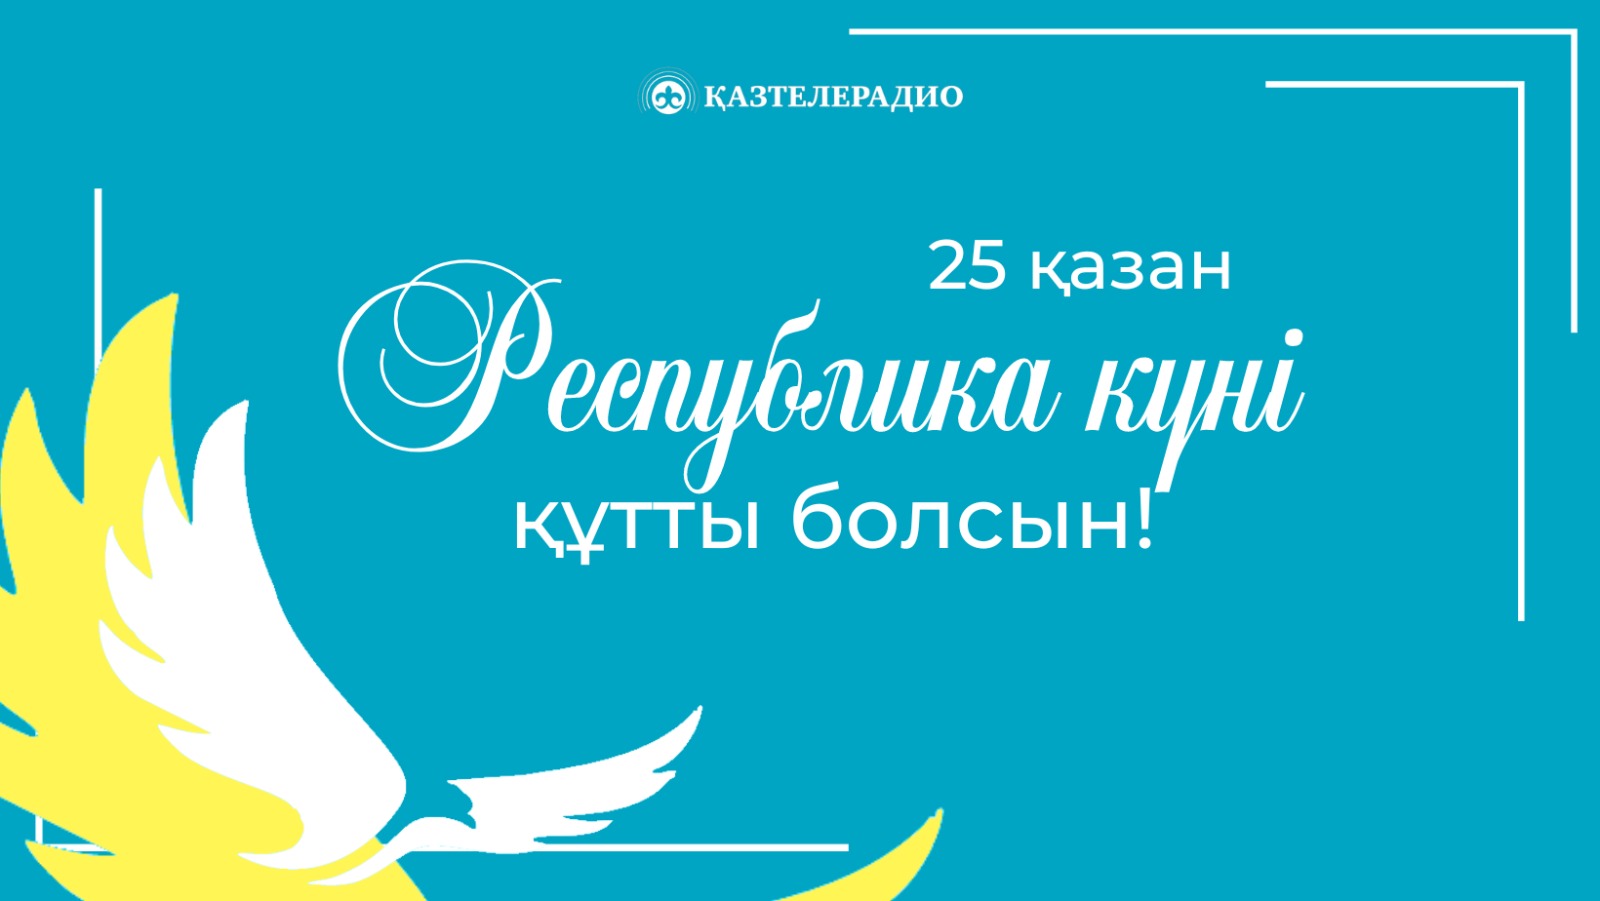 Поздравление с Днем Республики Казахстан!